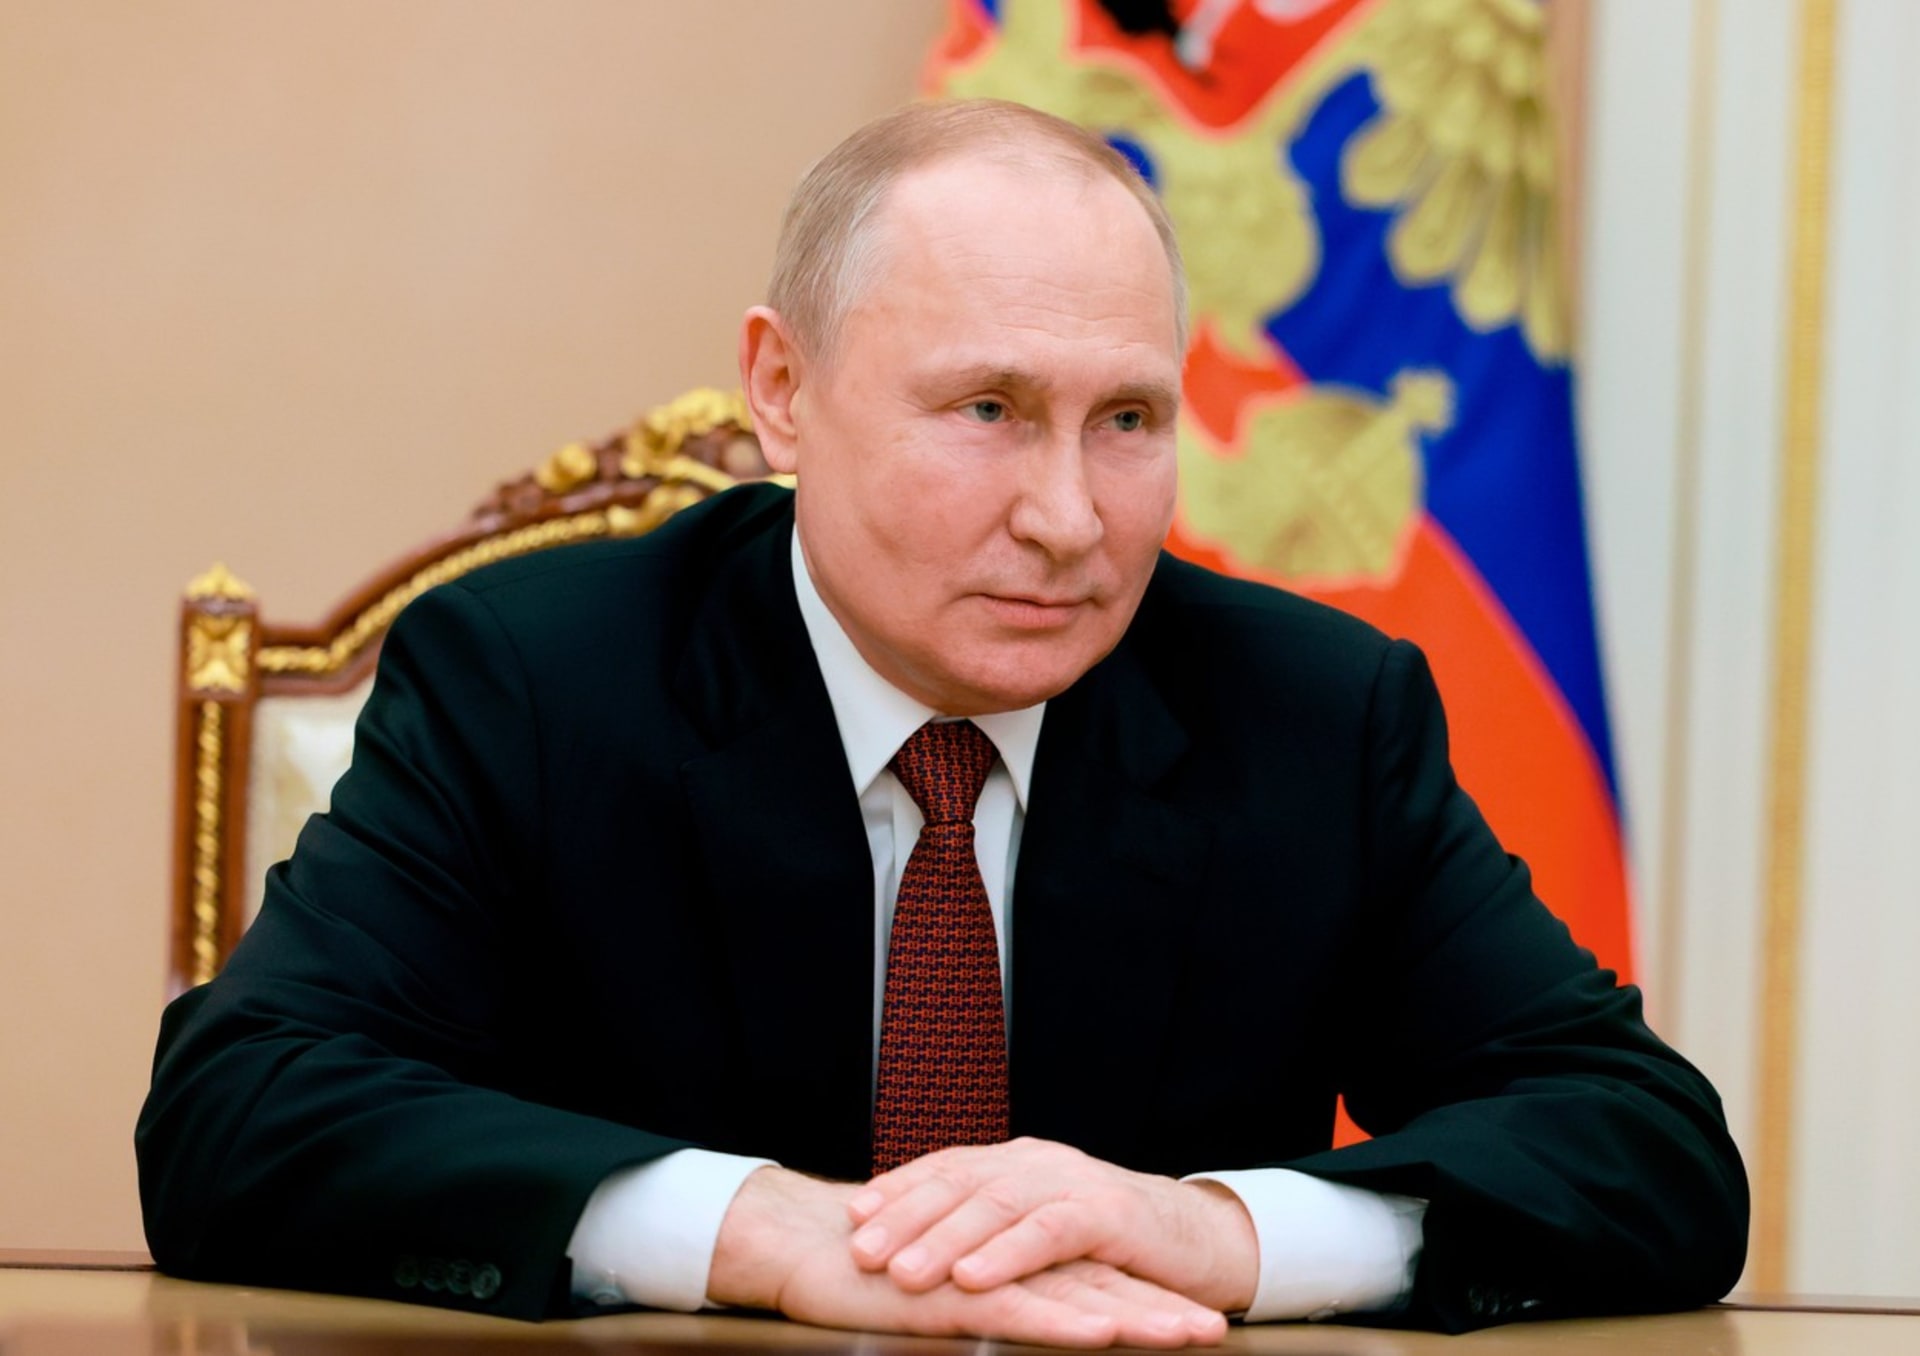 Prezident Ruské federace Vladimir Putin